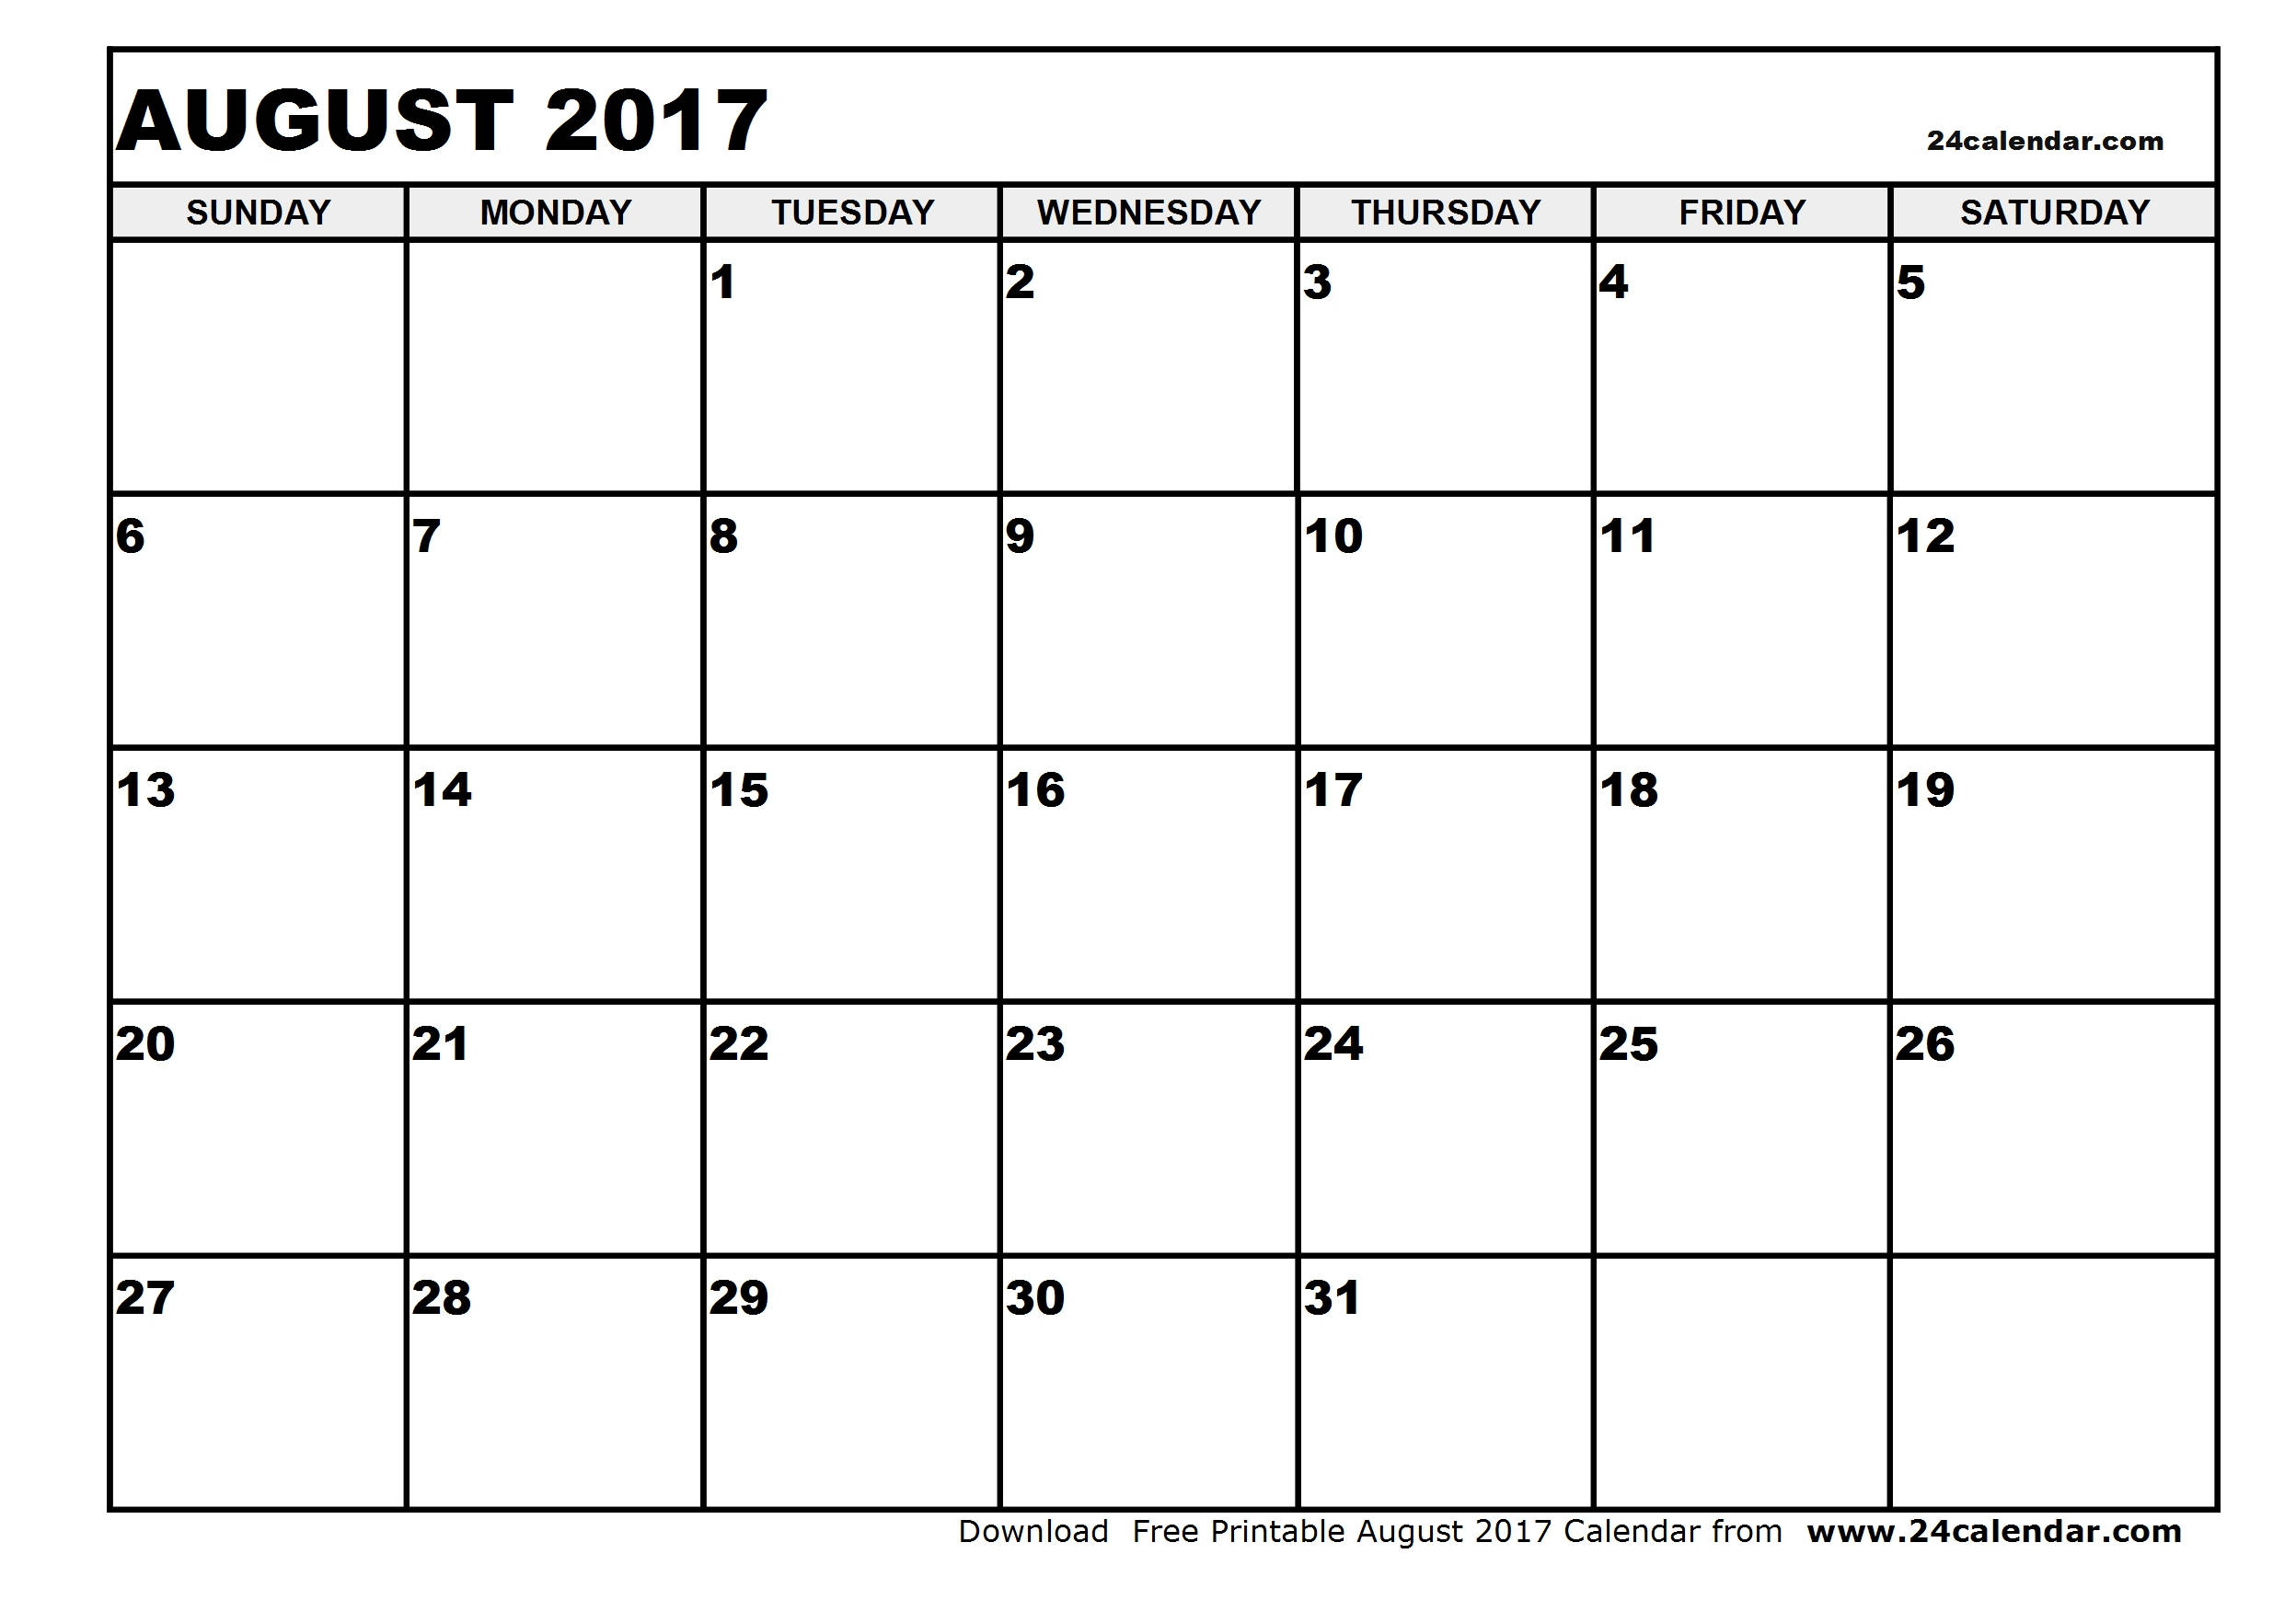 Blank August 2017 Calendar in Printable format.